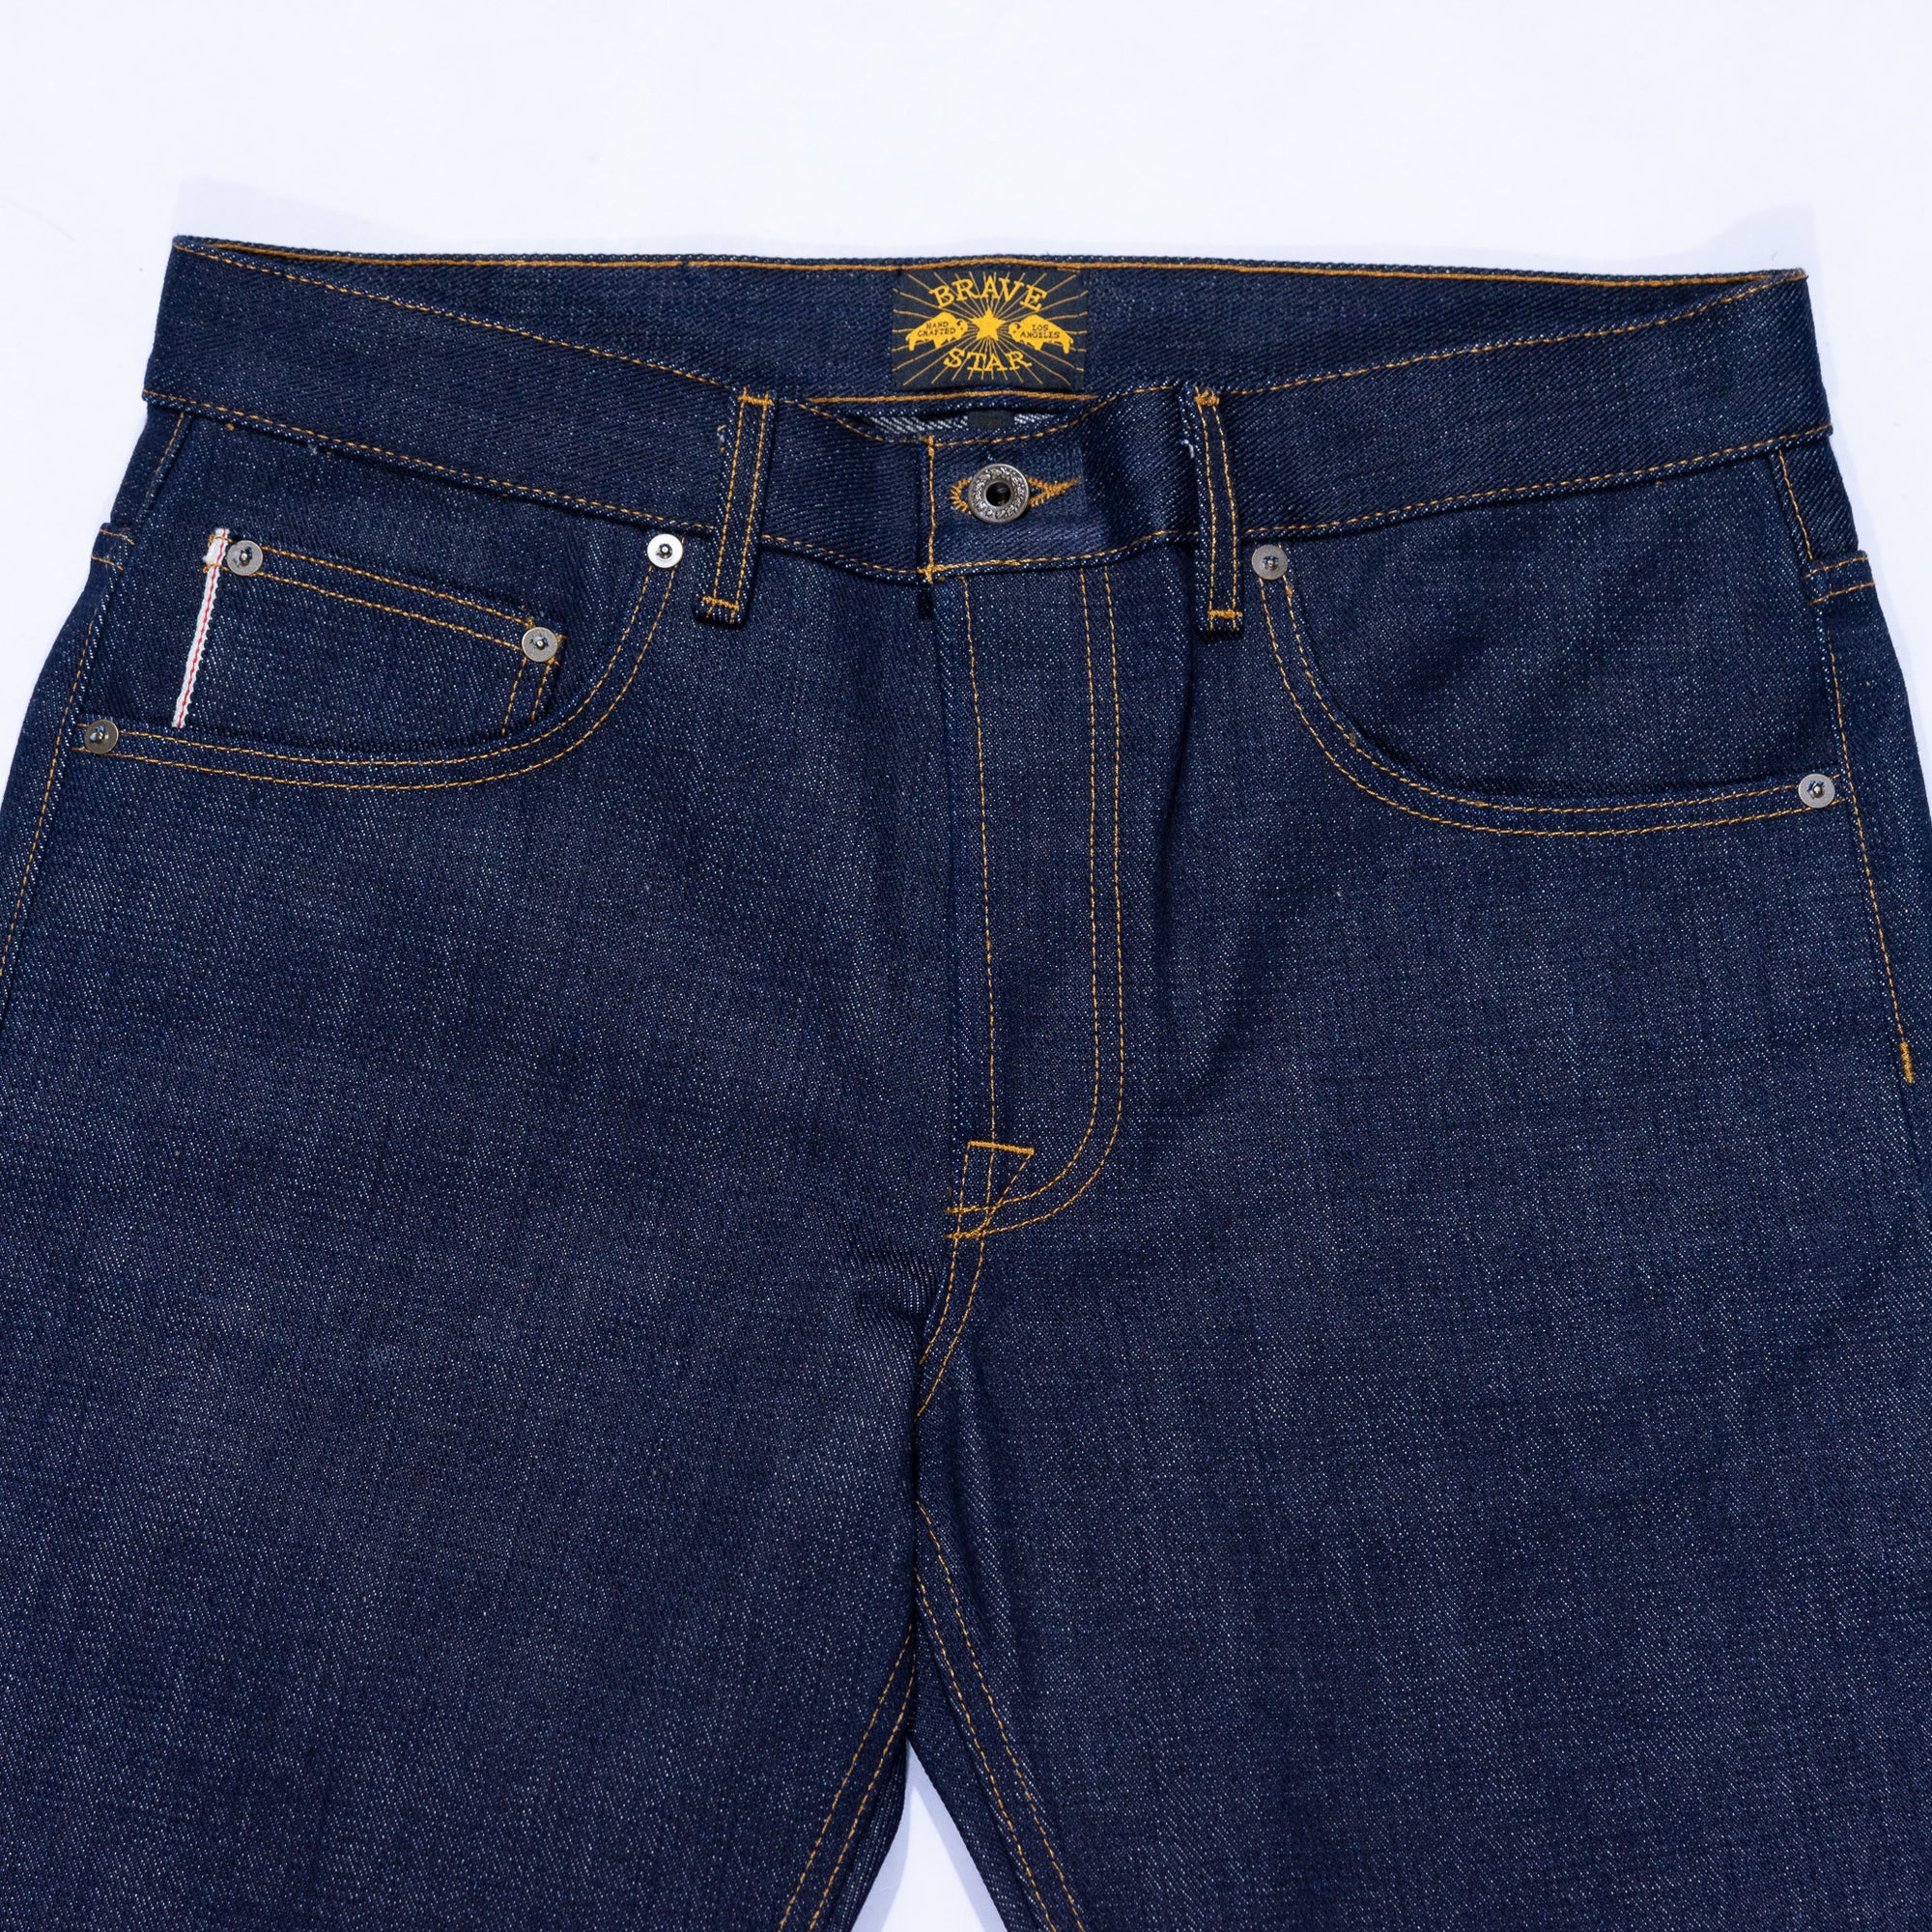 brave star selvedge denim jeans 32x35